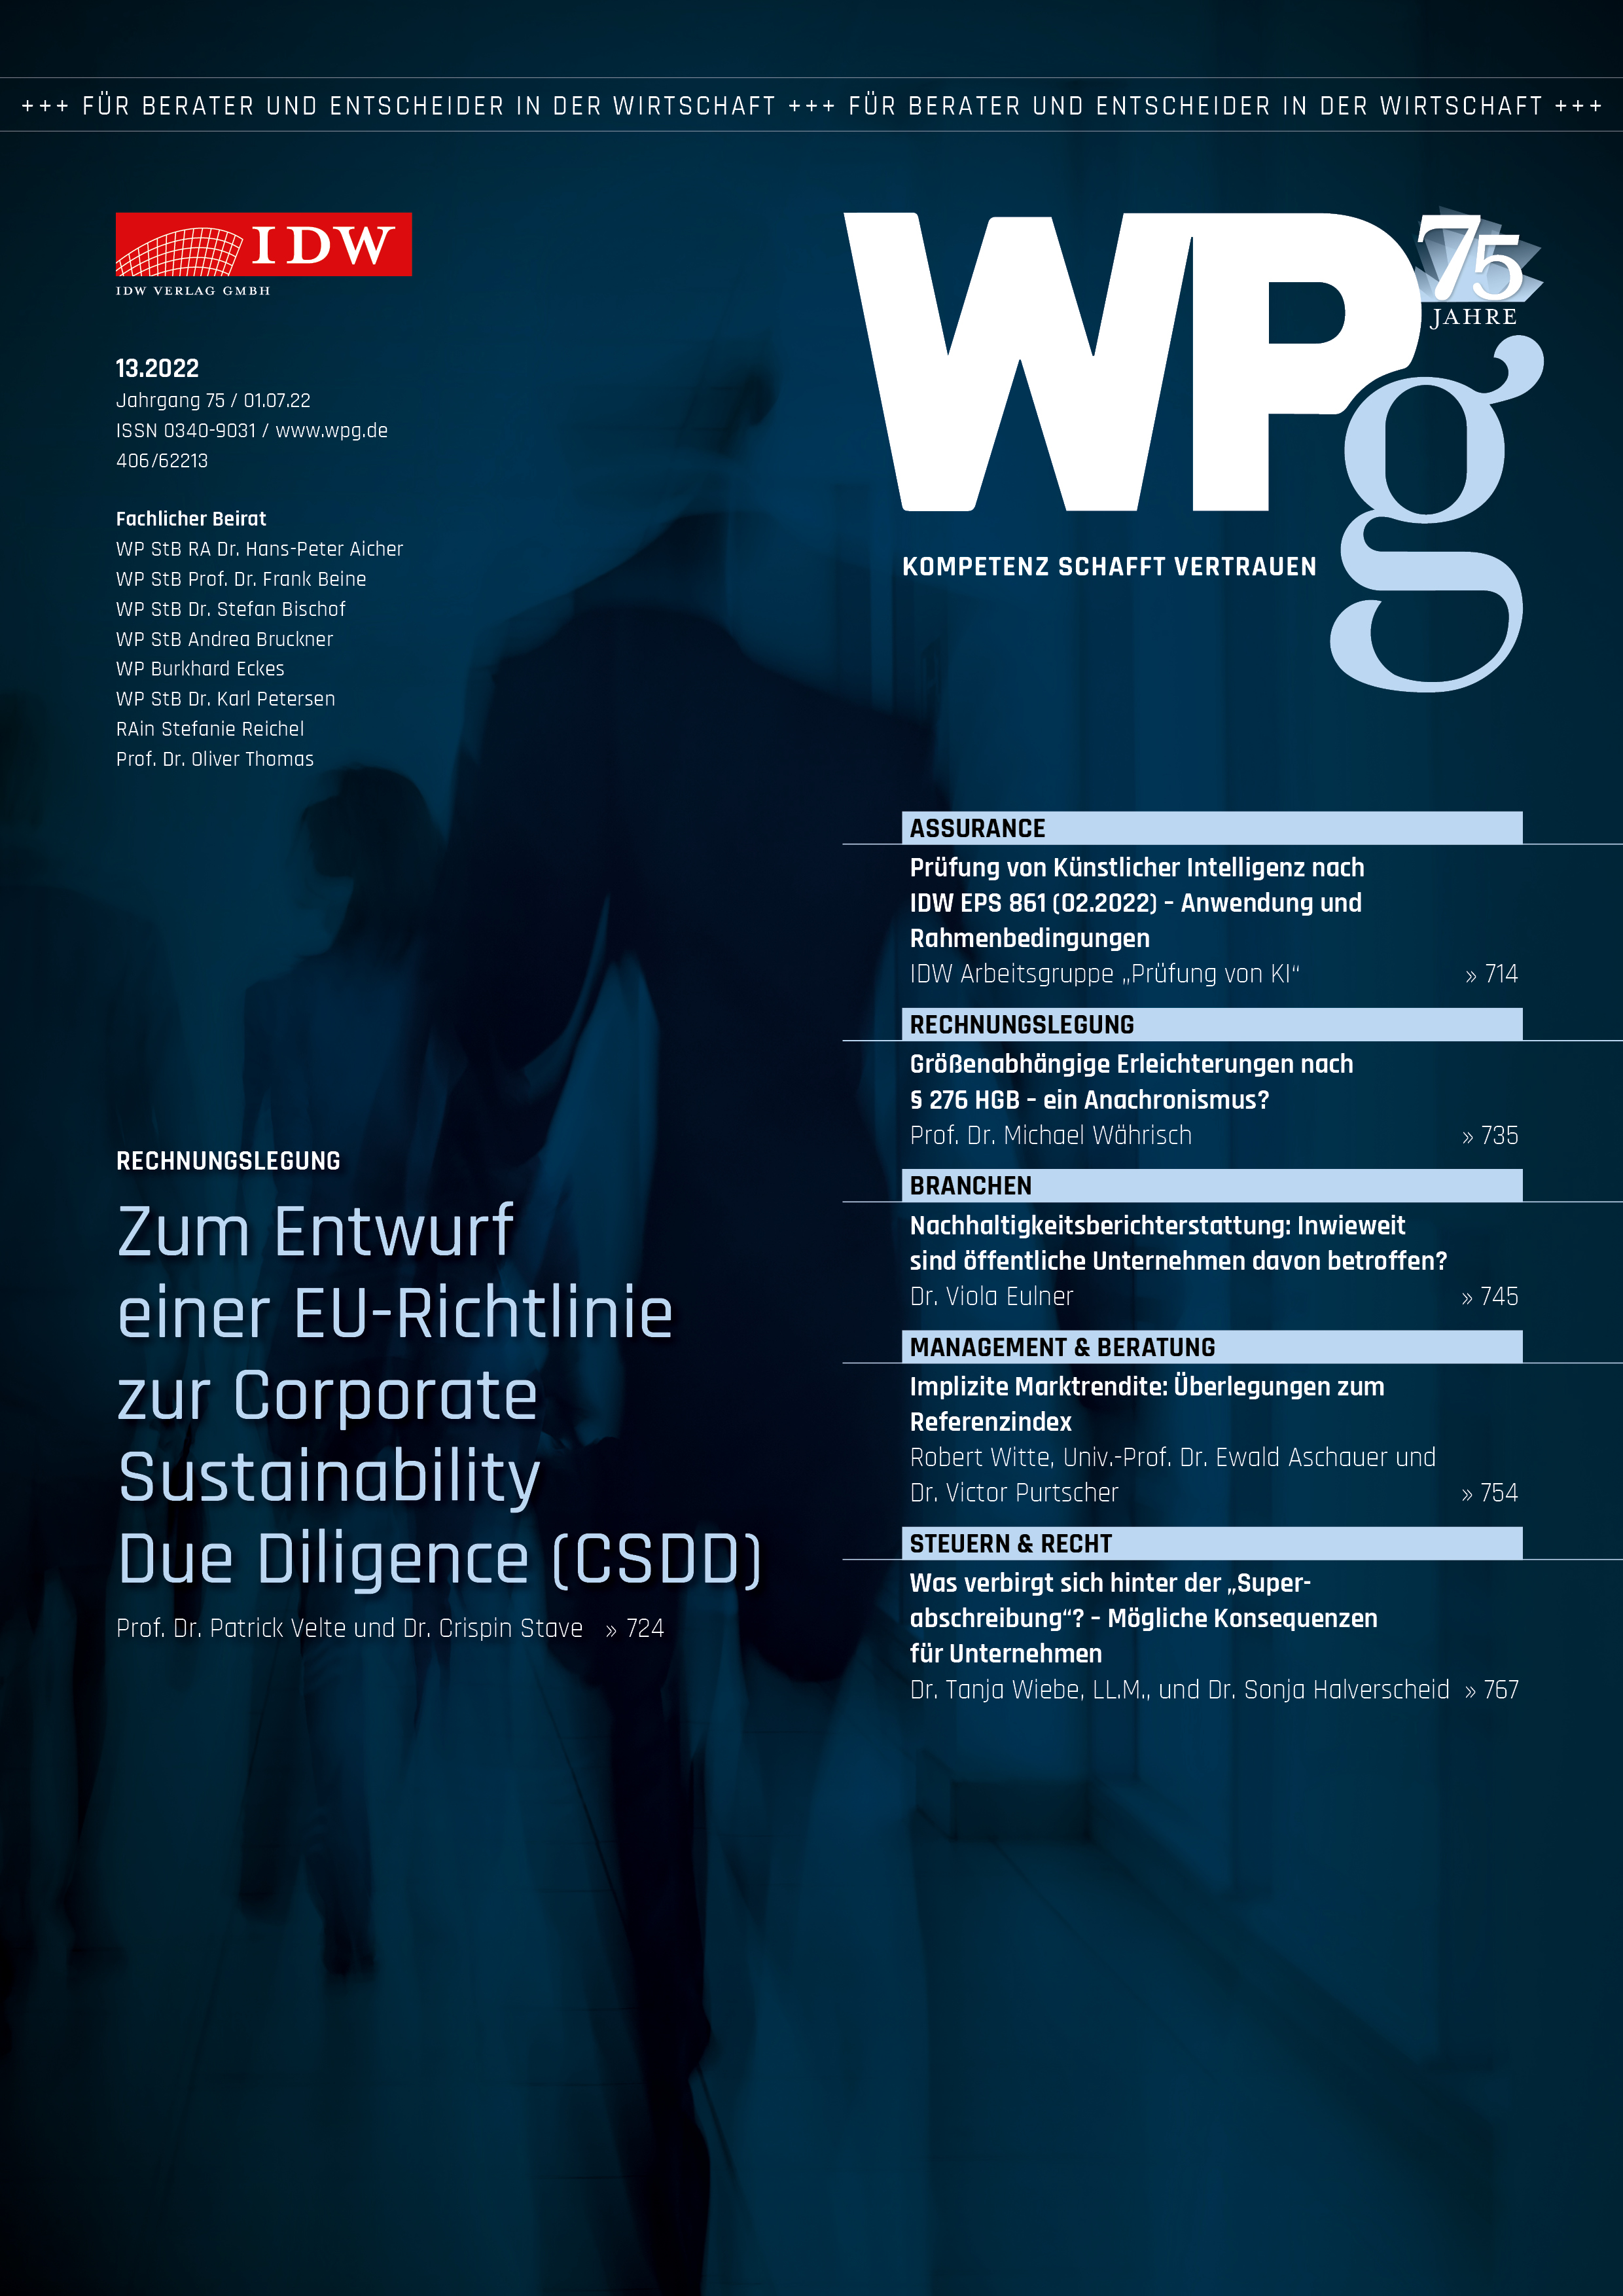 WPg - Die Wirtschaftsprüfung 13/2022 